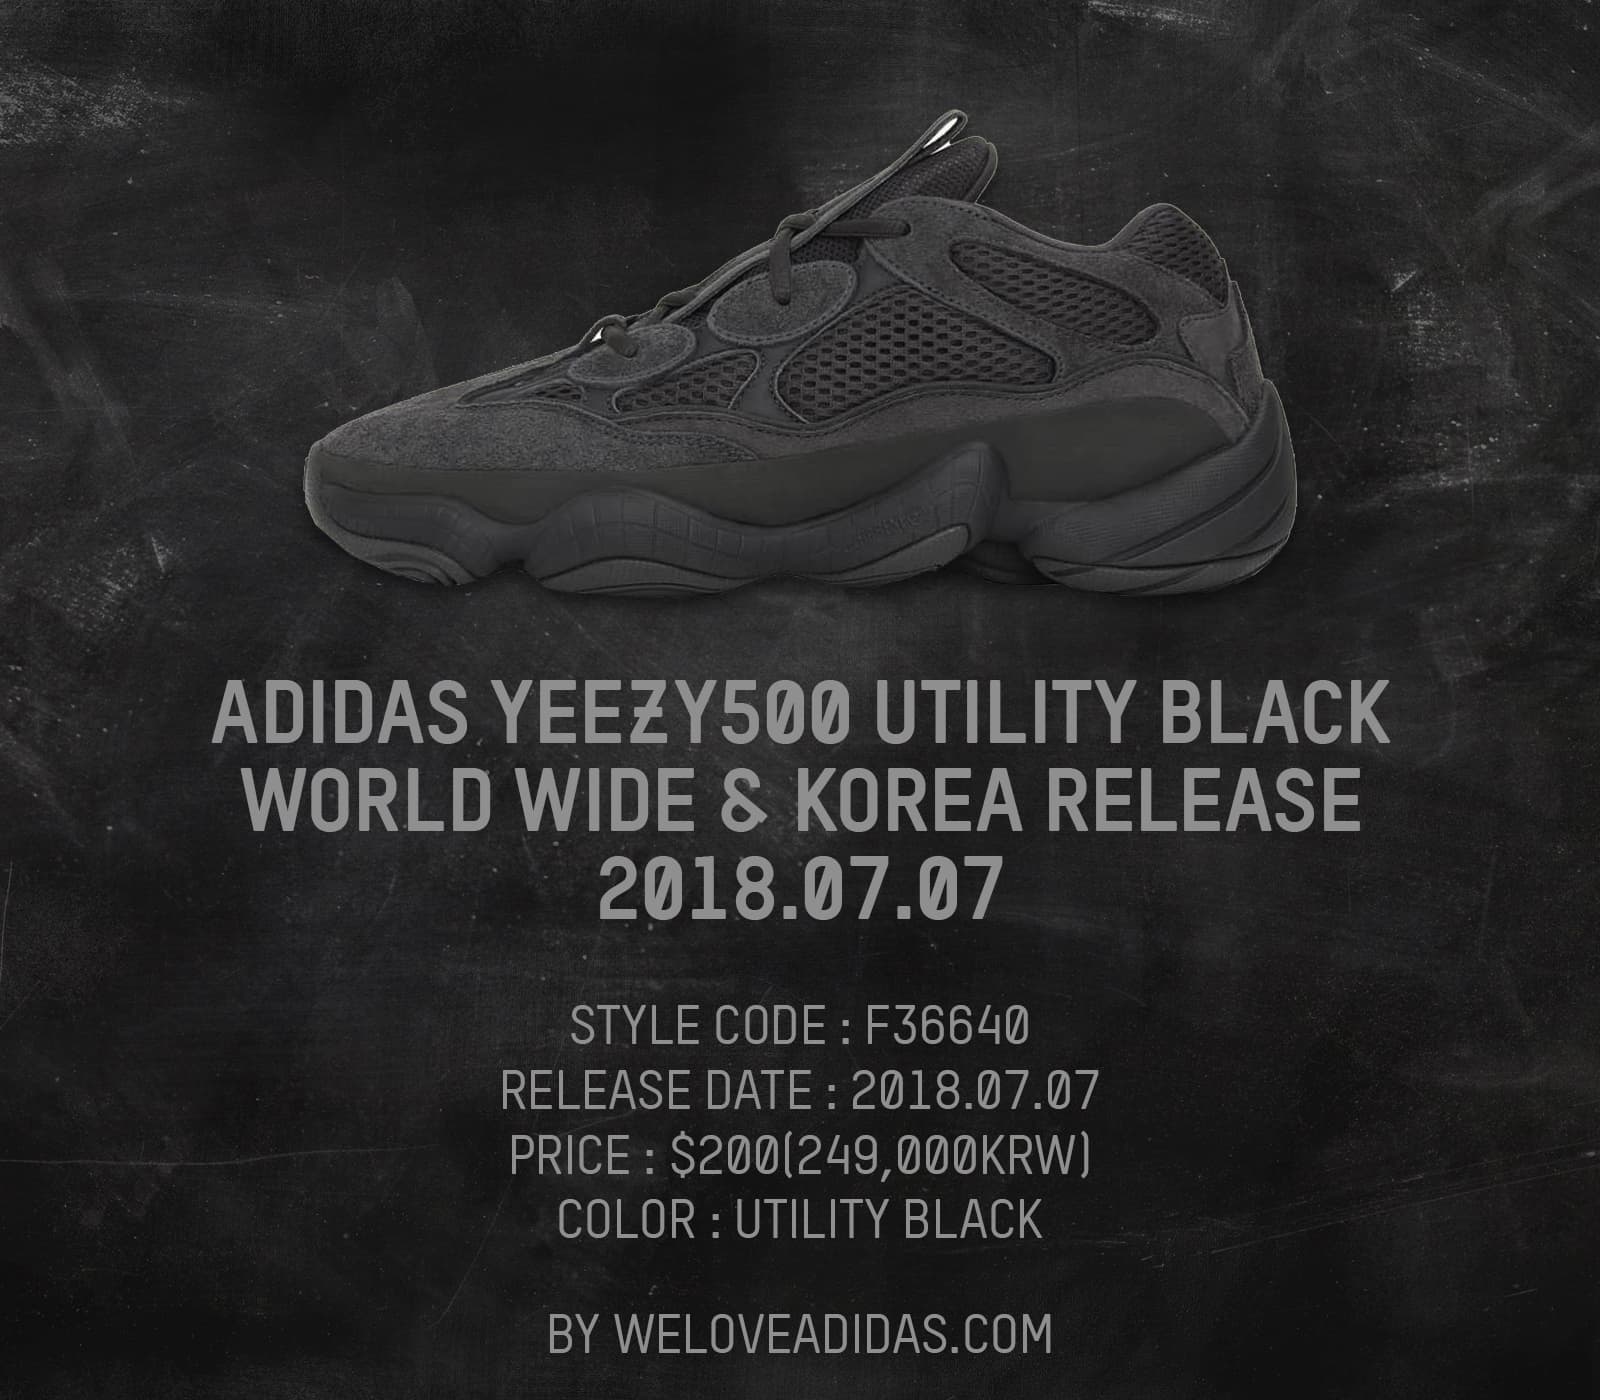 7월 7일 만나요, 아디다스 이지 500 유틸리티 블랙(adidas Yeezy 500 Utility Black Releases On July 7th) 1